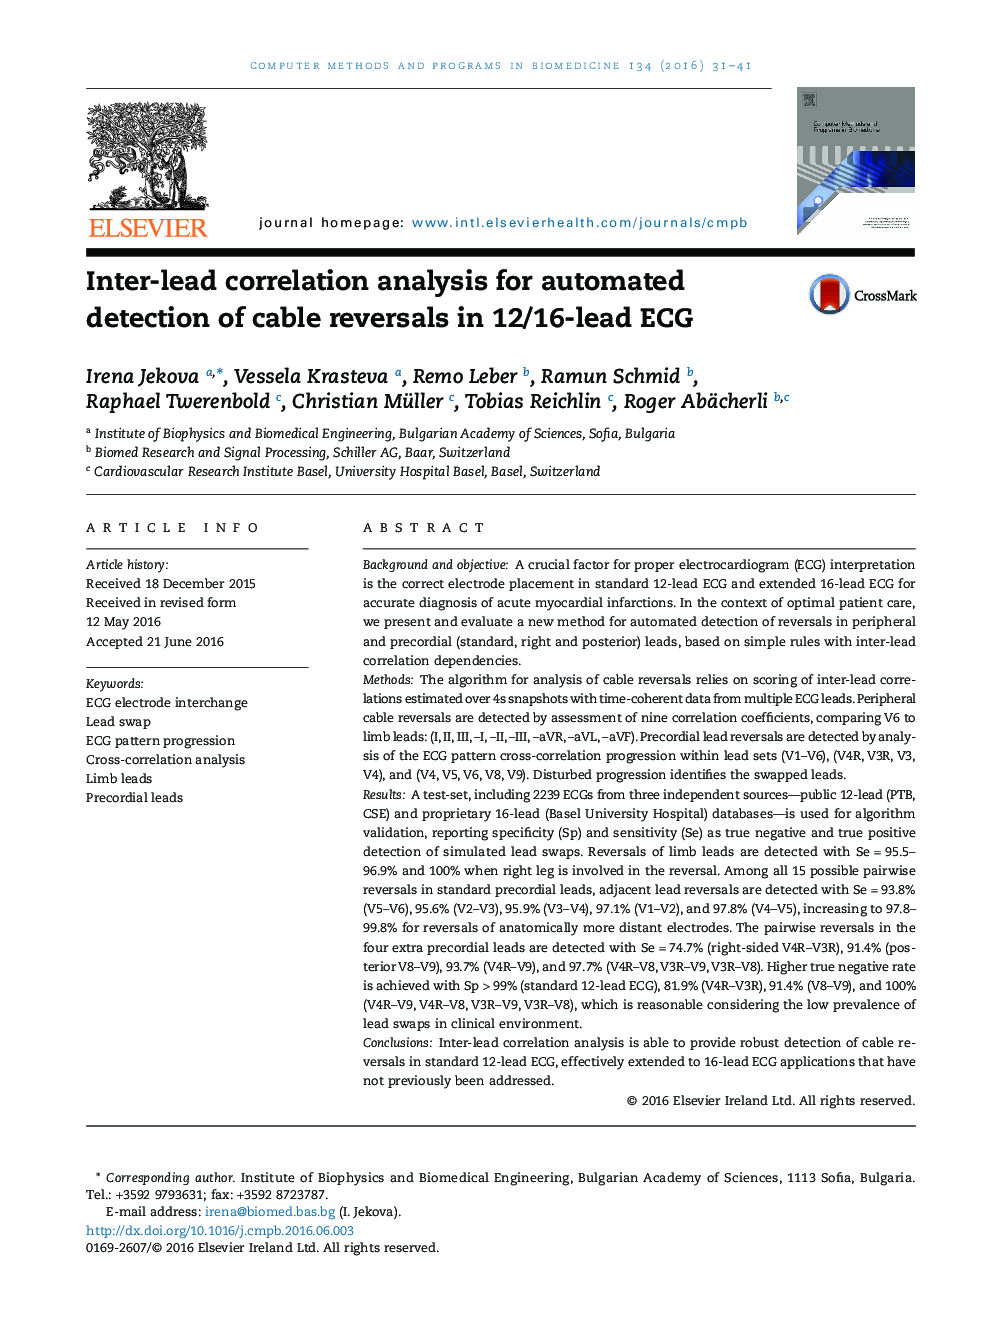 تجزیه و تحلیل همبستگی بین هدایتی برای تشخیص خودکار وارونگی های کابل در ECG با هدایت 12/16 